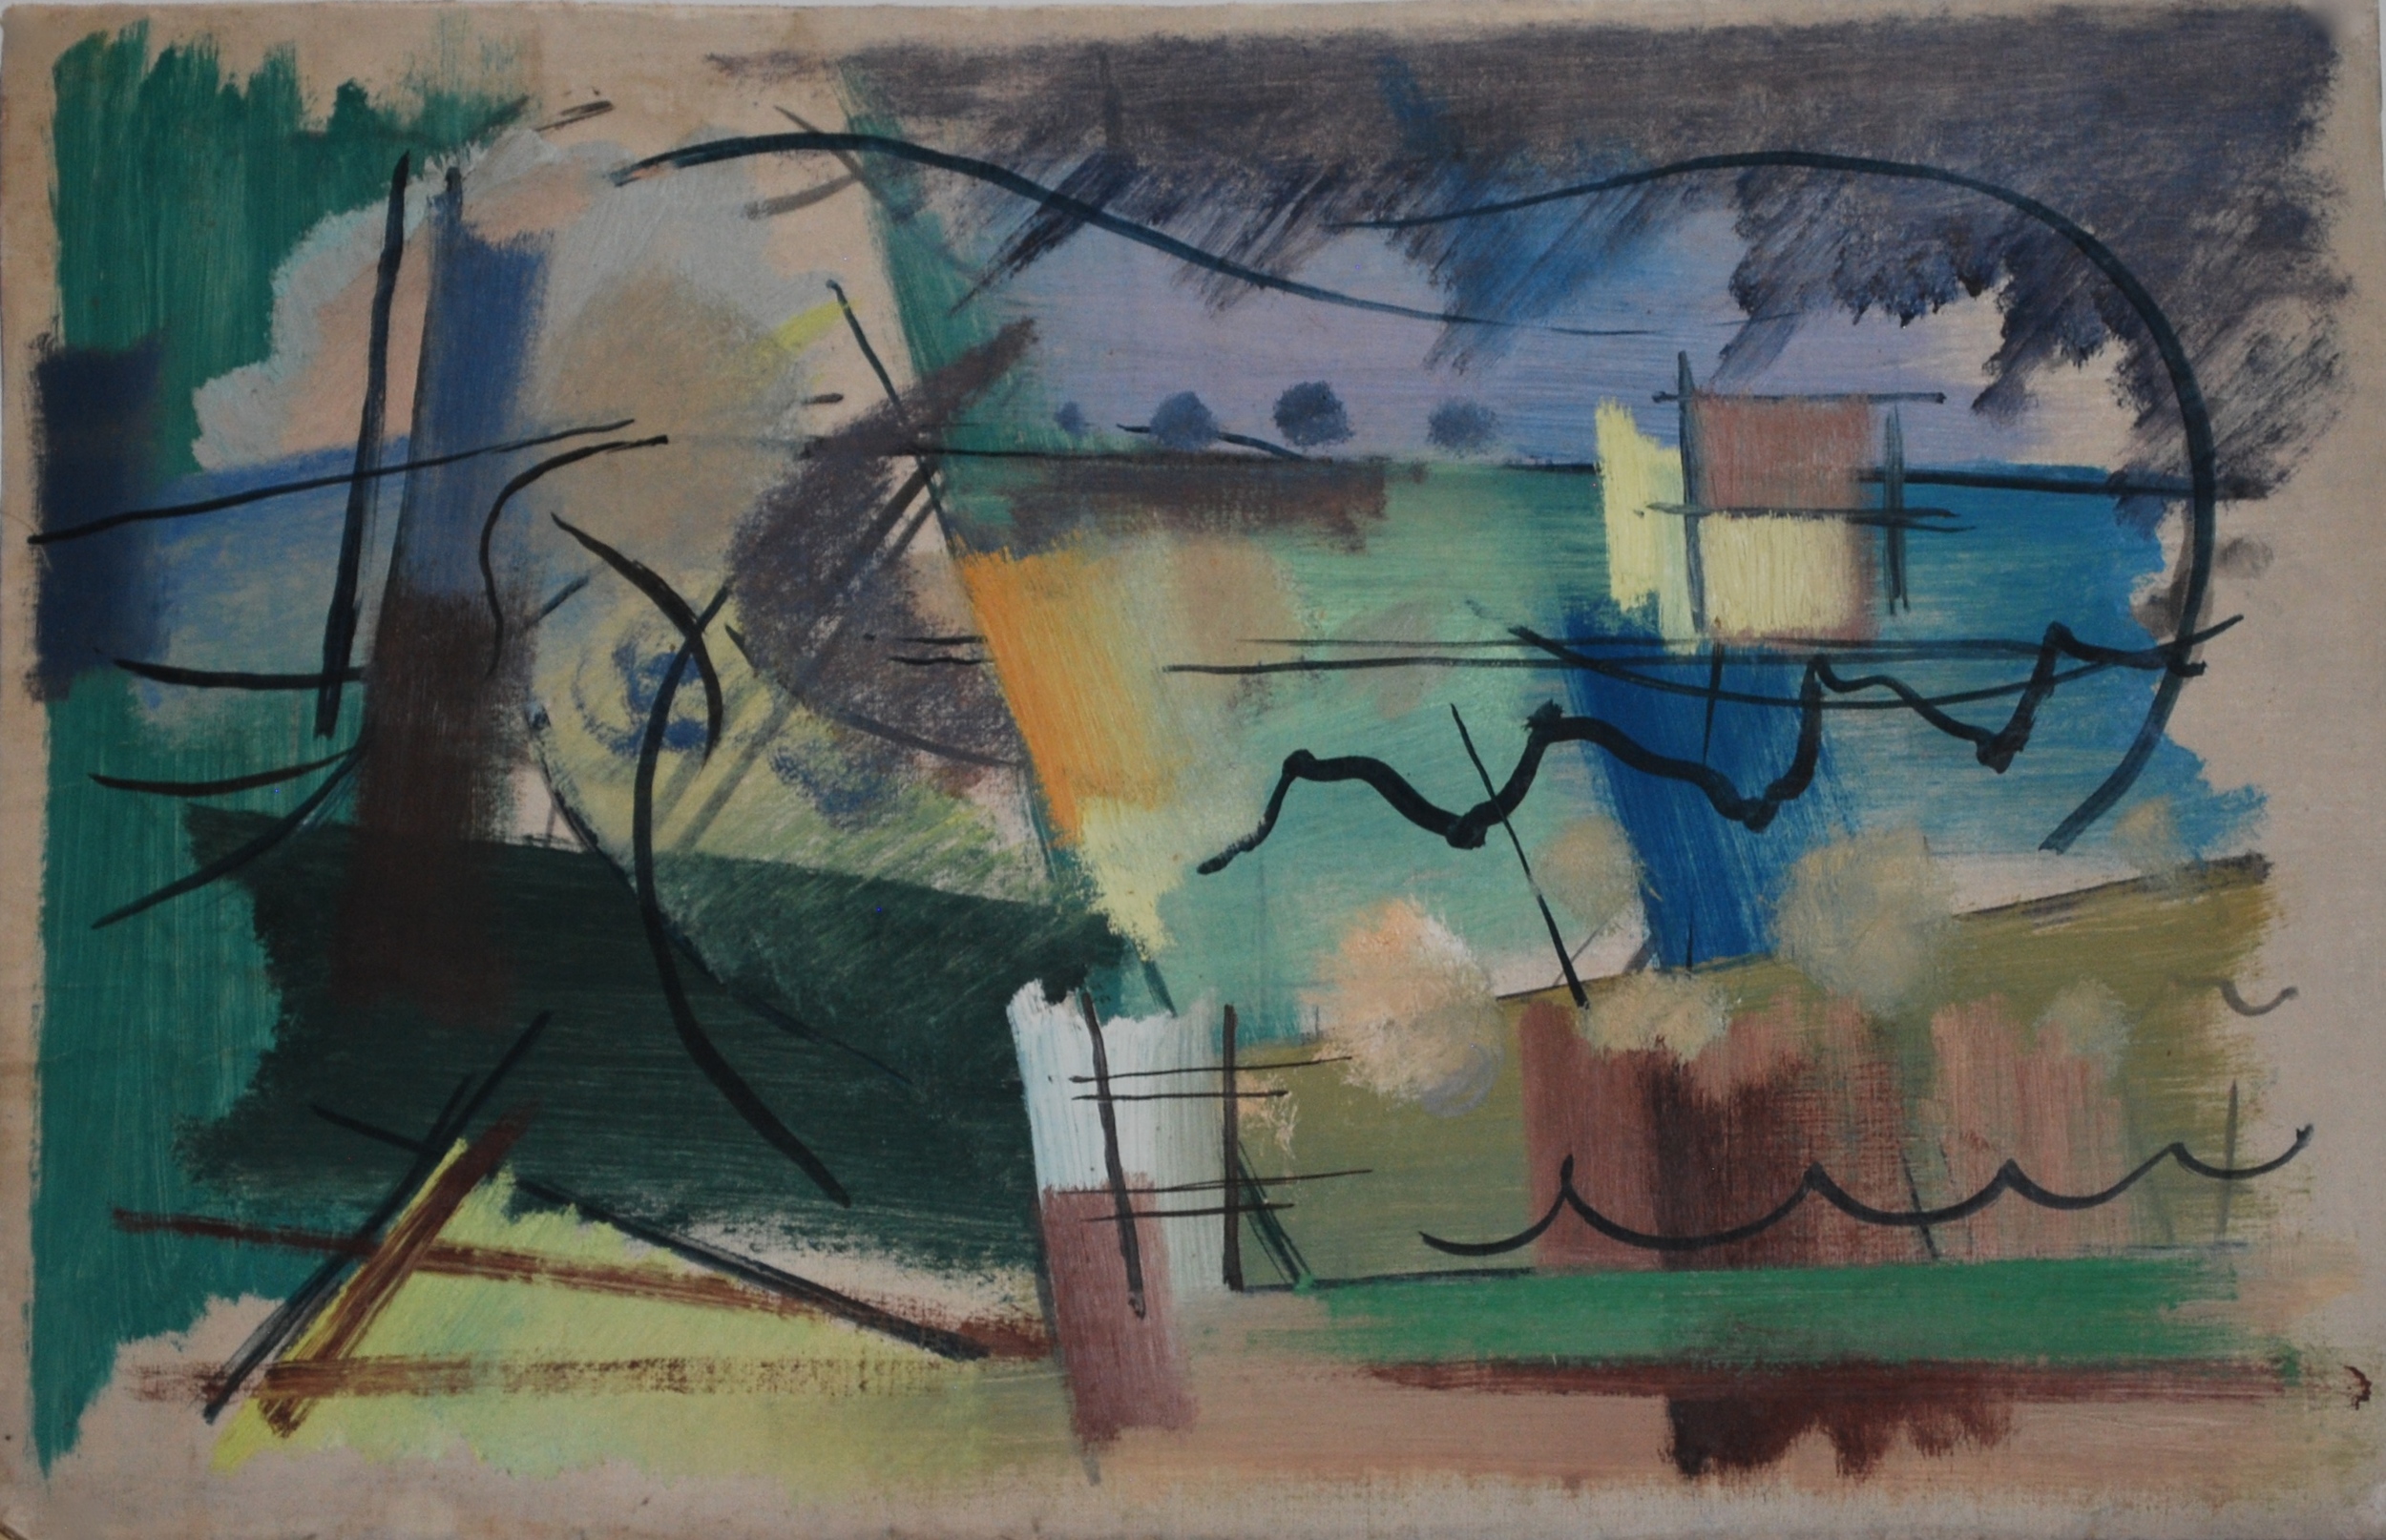  Landscape, c1950&nbsp; Watercolour &nbsp;49 x 33cm 